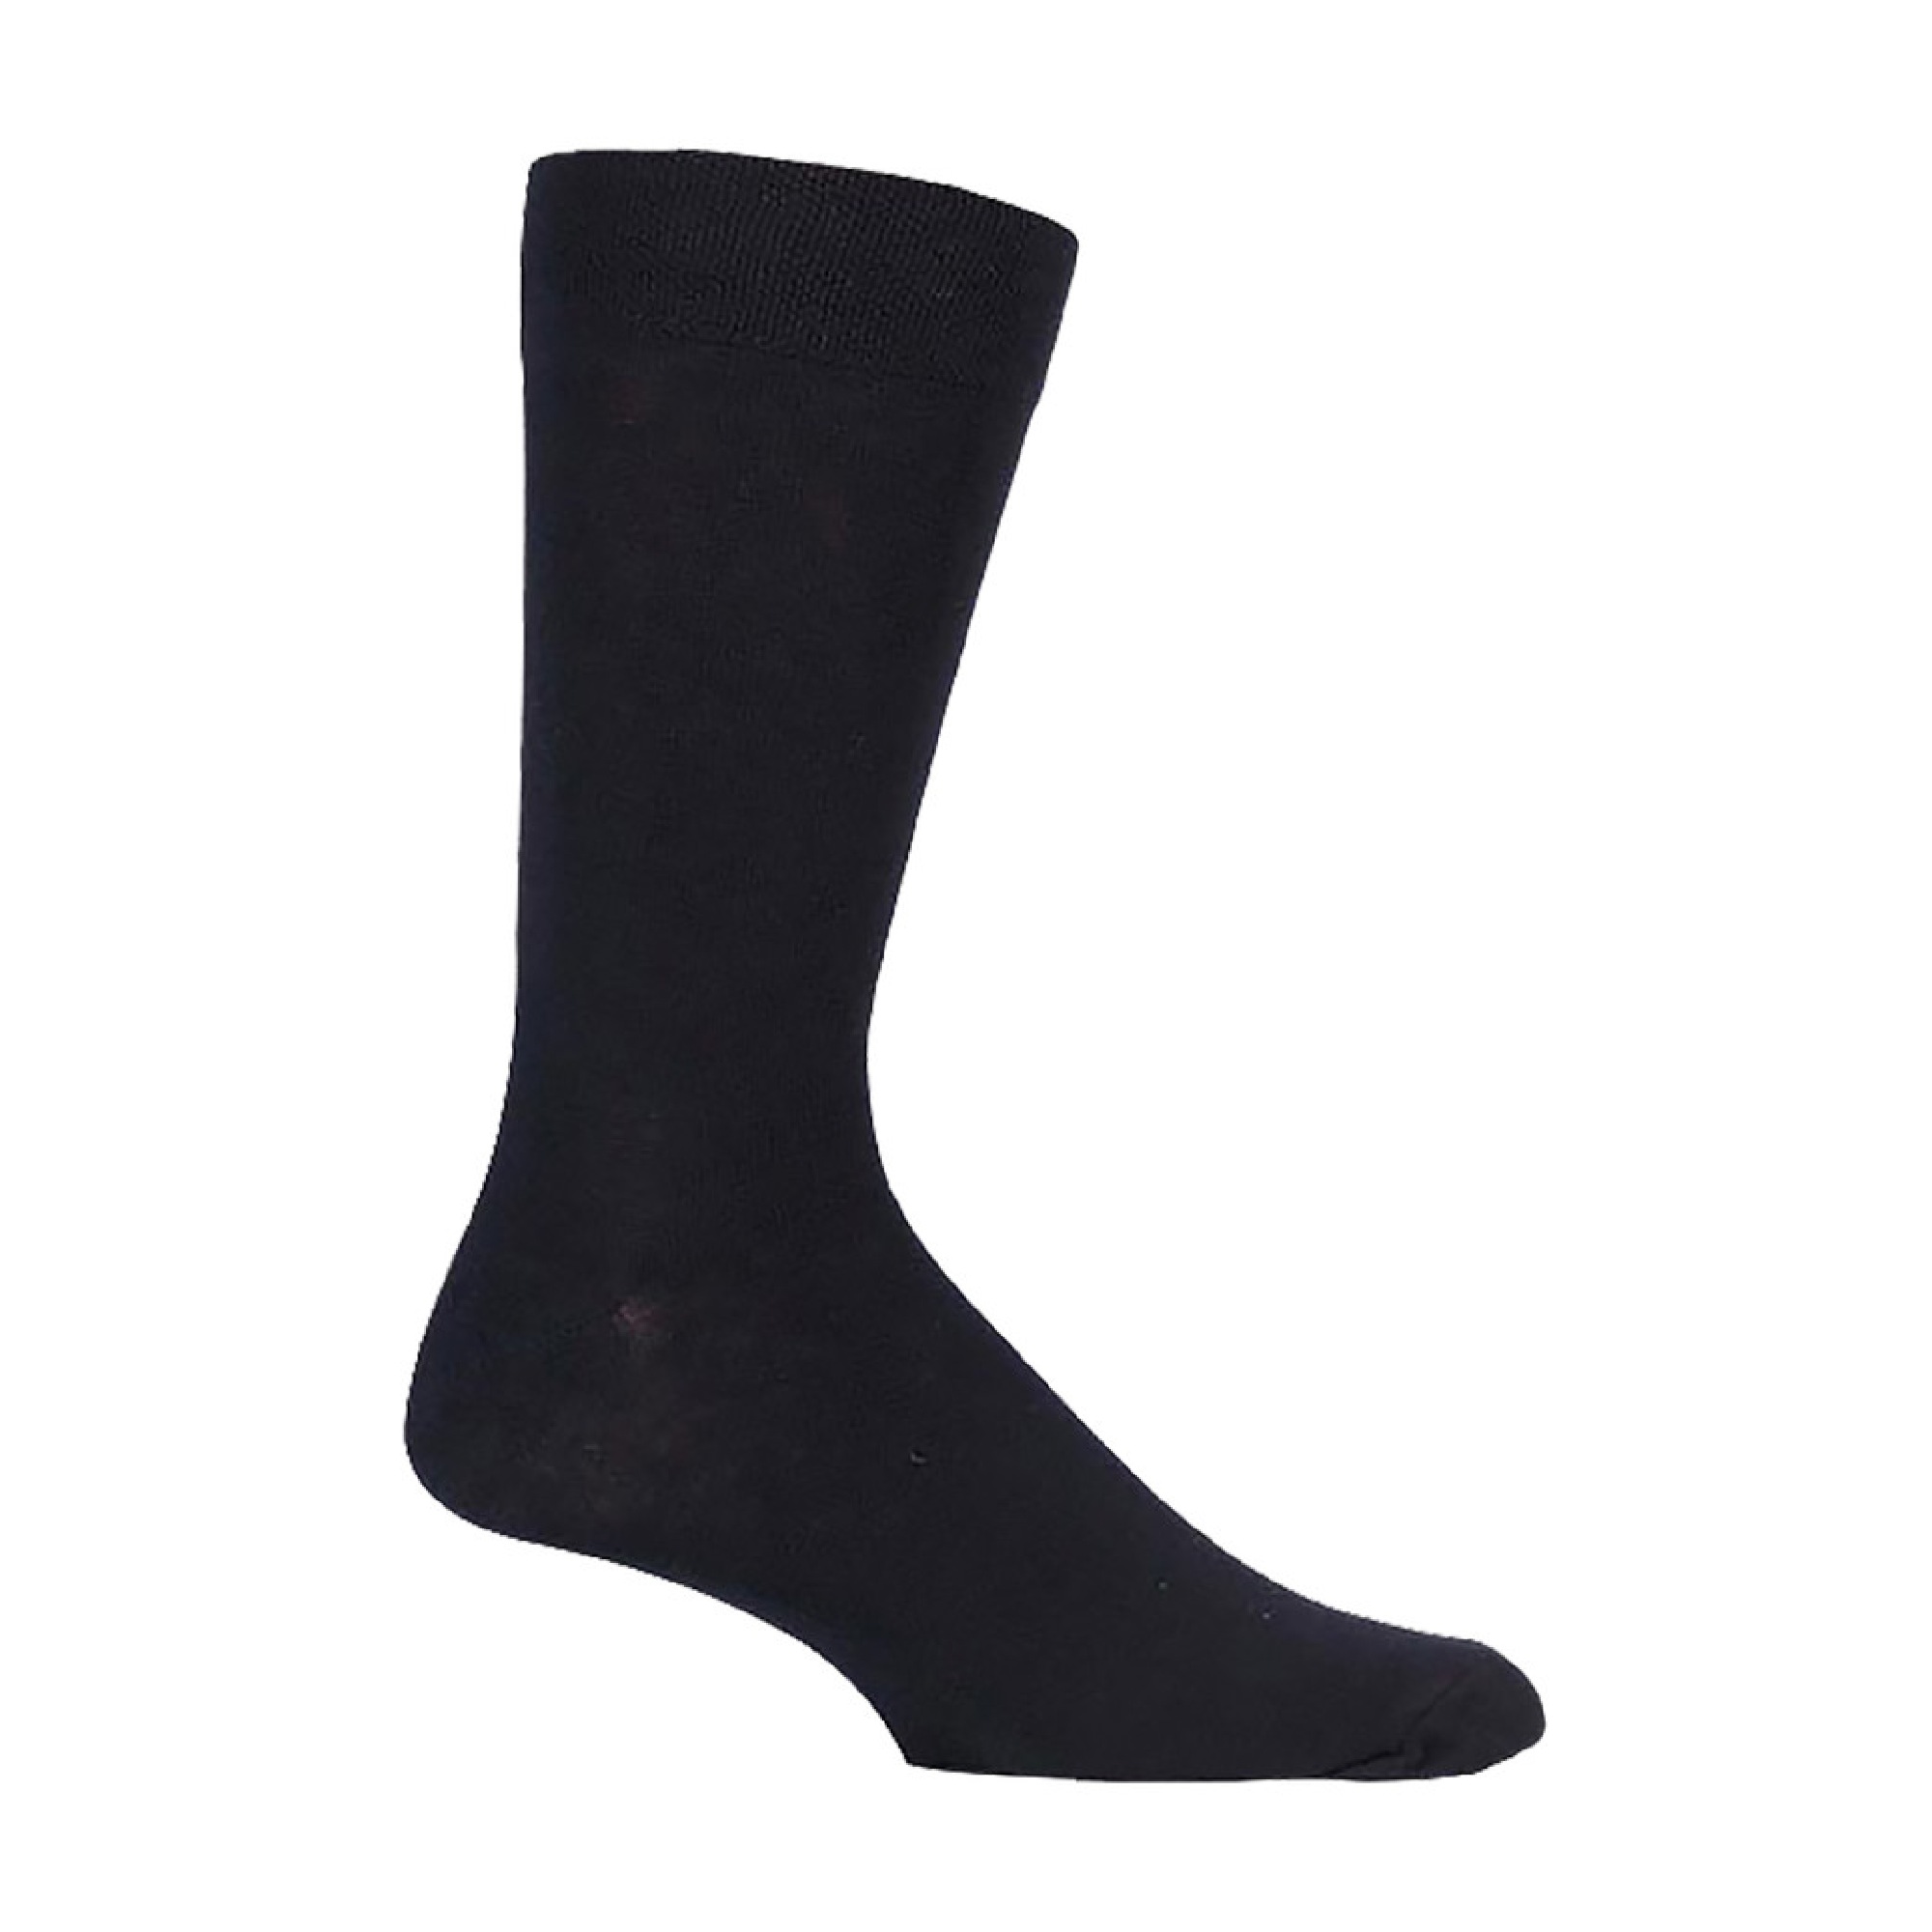 Men's Multipack Plain Black Bamboo Socks | Soft Dress Socks Value Pack